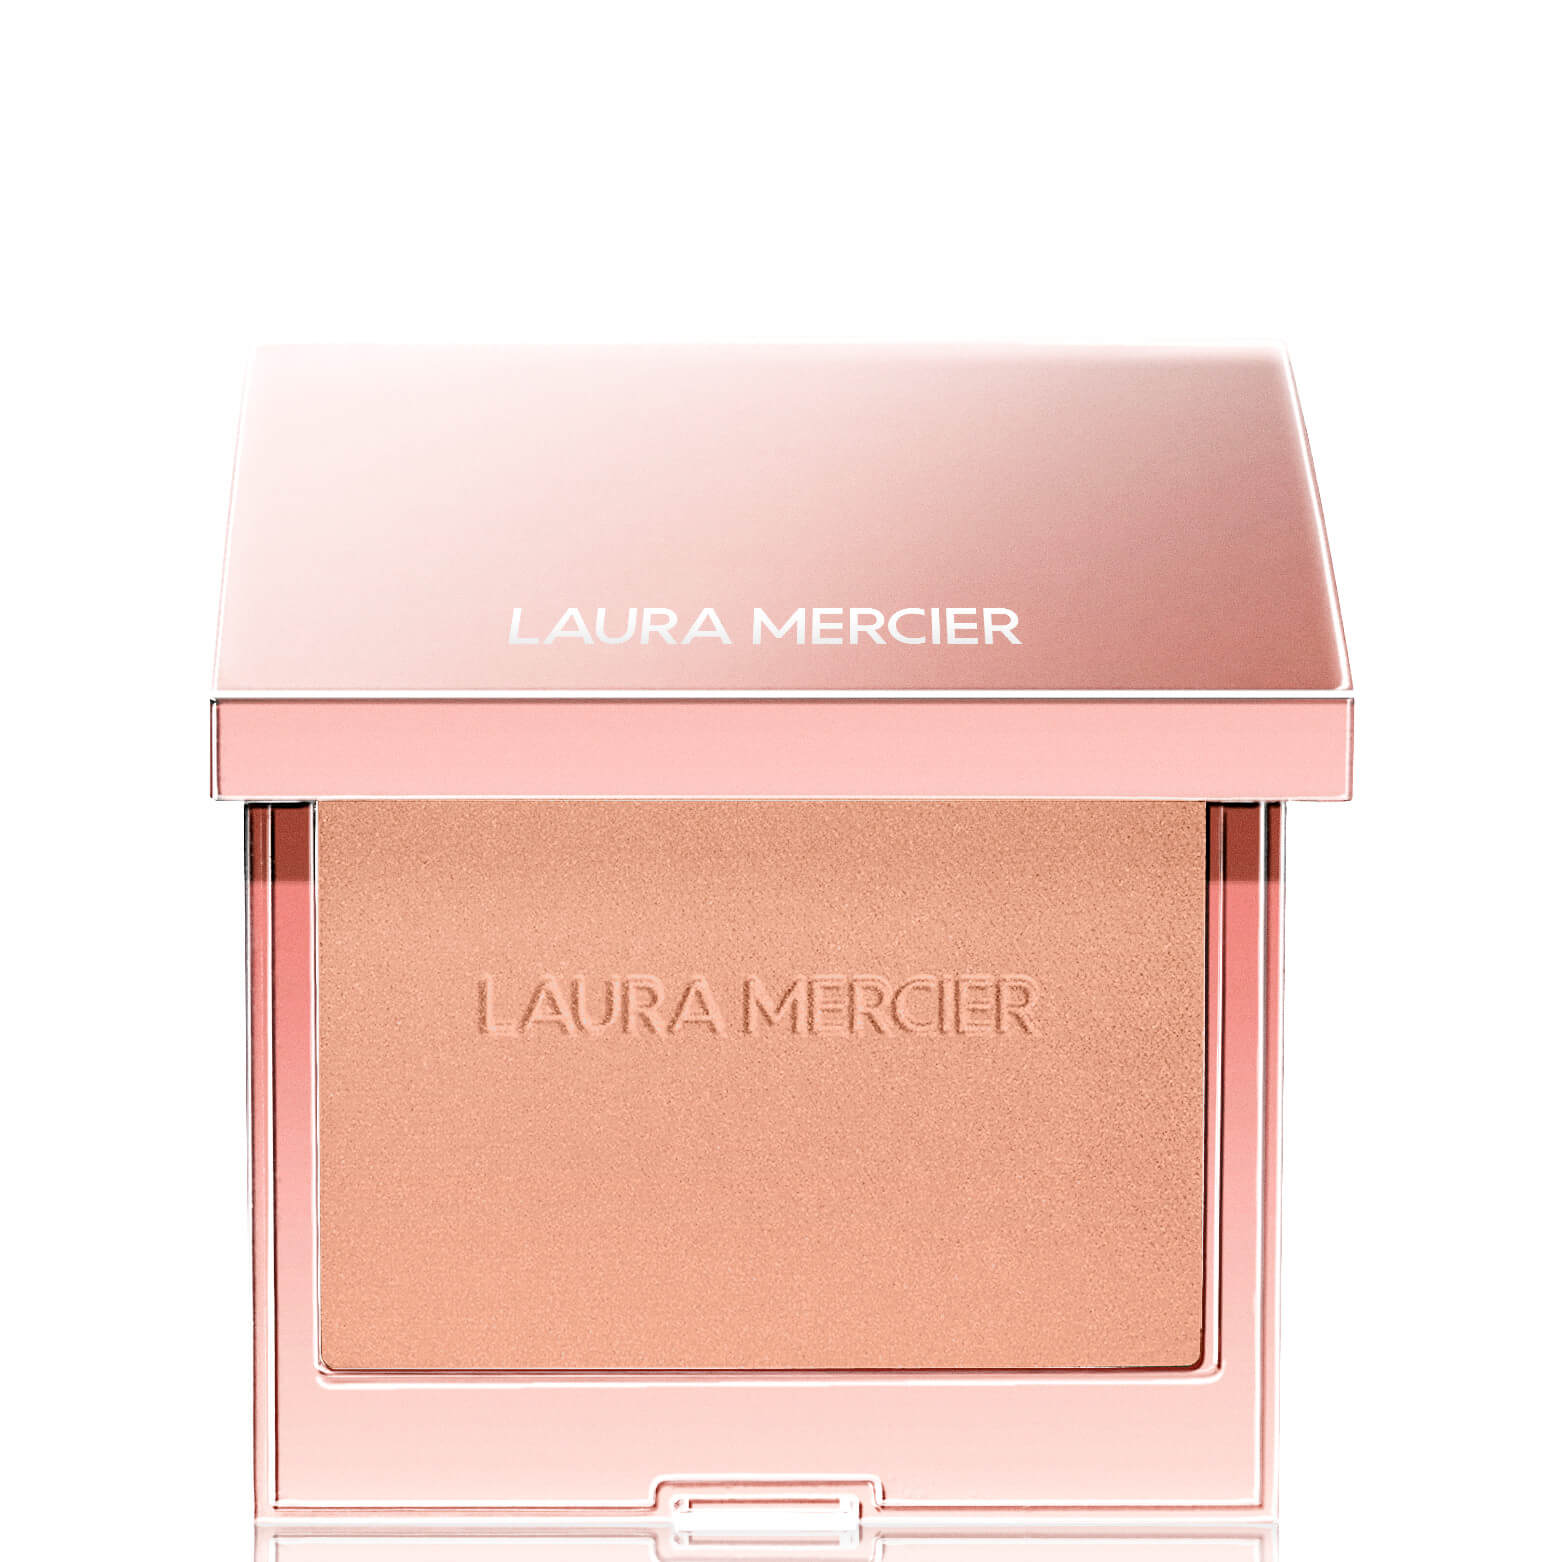 Photos - Face Powder / Blush Laura Mercier Blush Colour Infusion Blusher 6g  - Peach Sh (Various Shades)